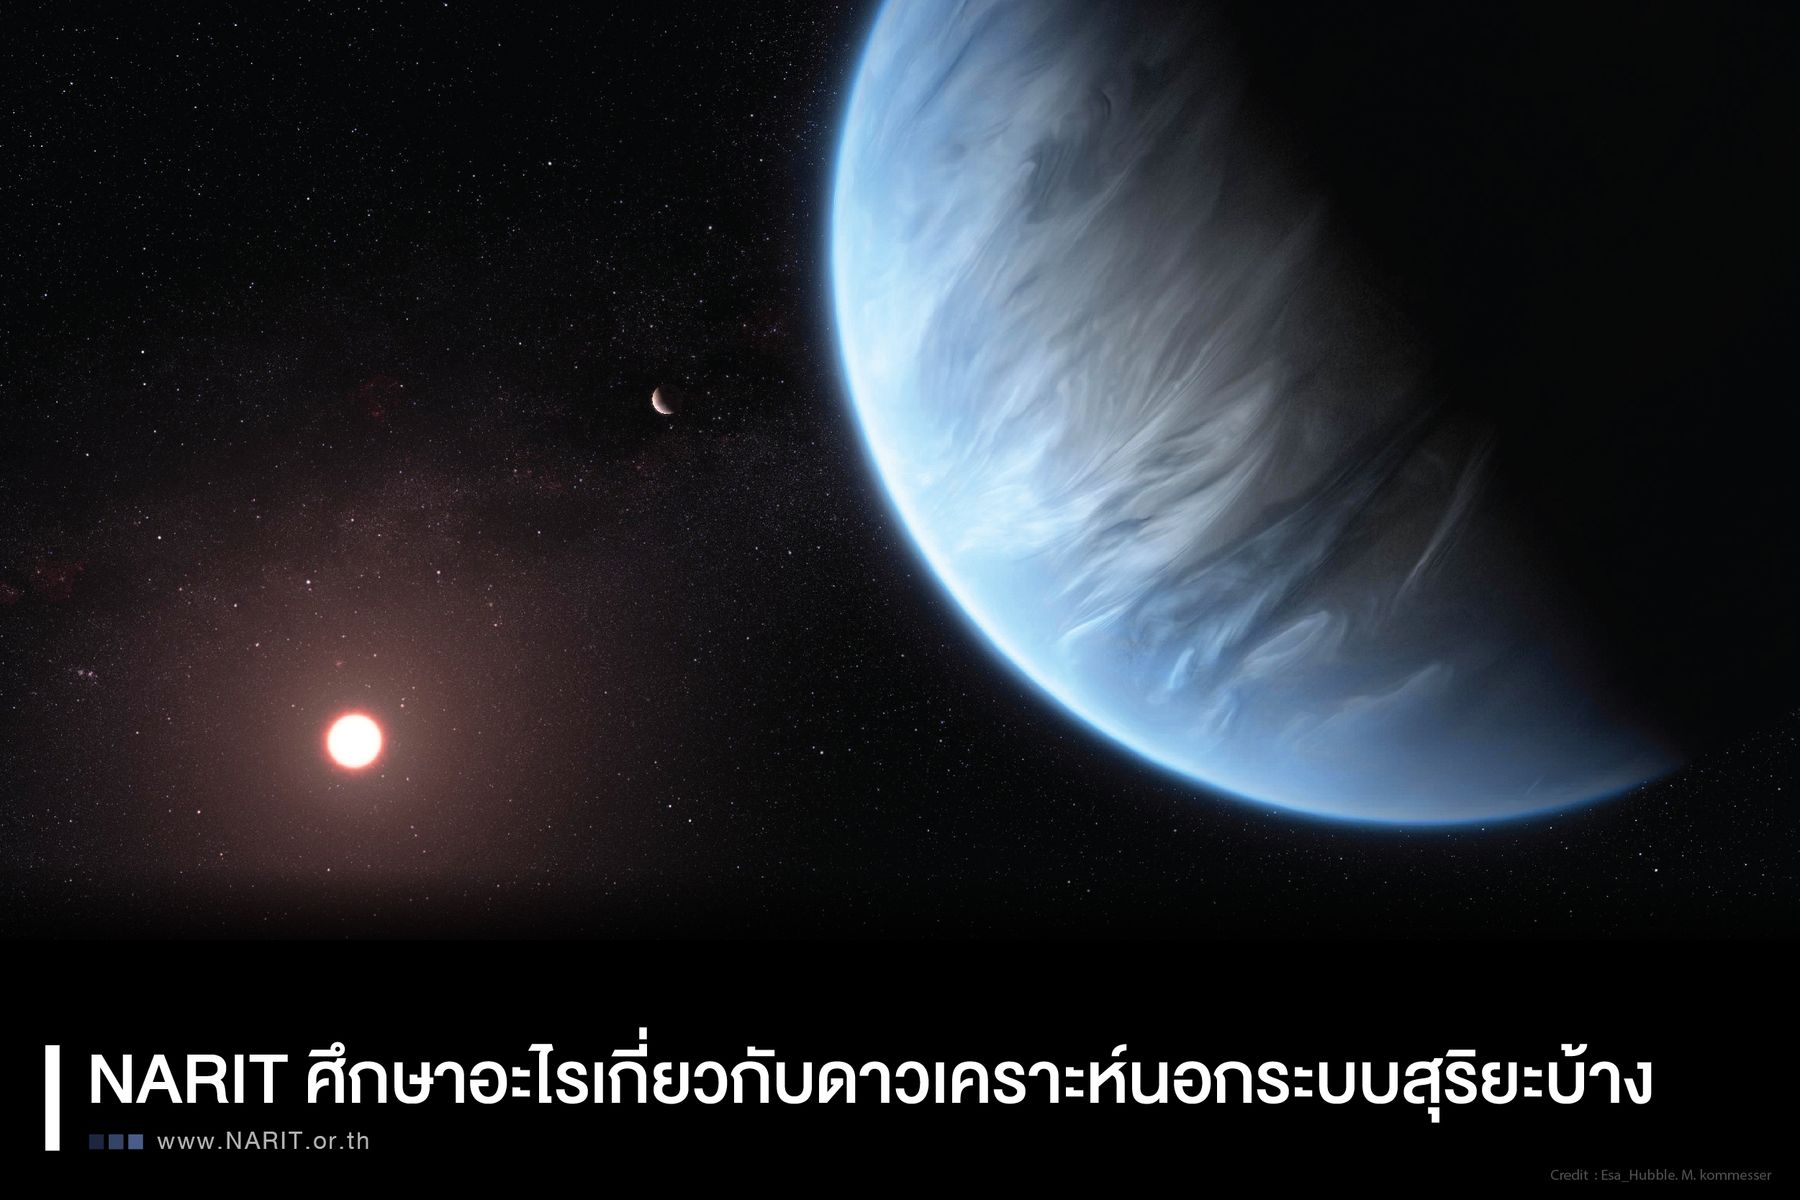 Ep. 26 NARIT ศึกษาอะไรเกี่ยวกับดาวเคราะห์นอกระบบสุริยะบ้าง